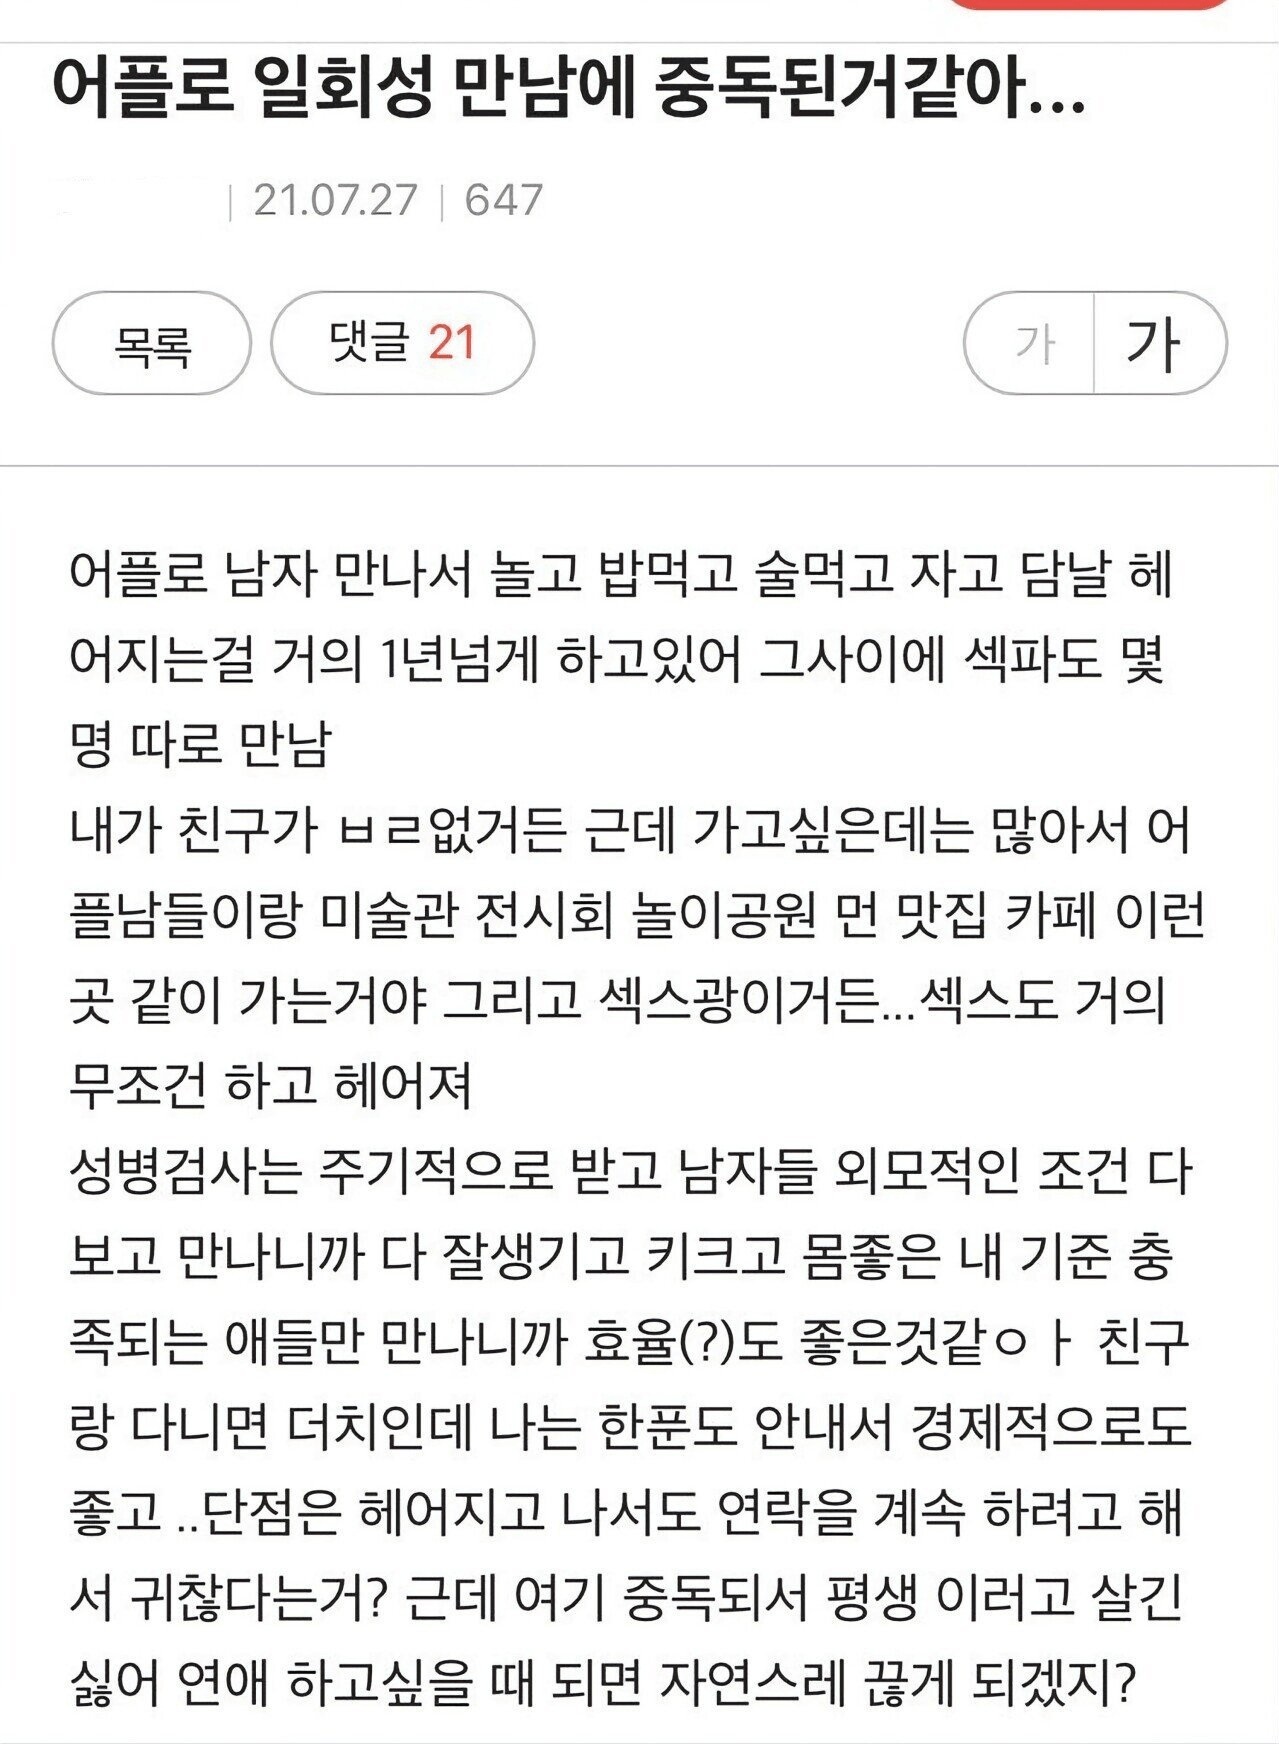 image.png 소개팅 어플 원나잇 중독녀의 결말